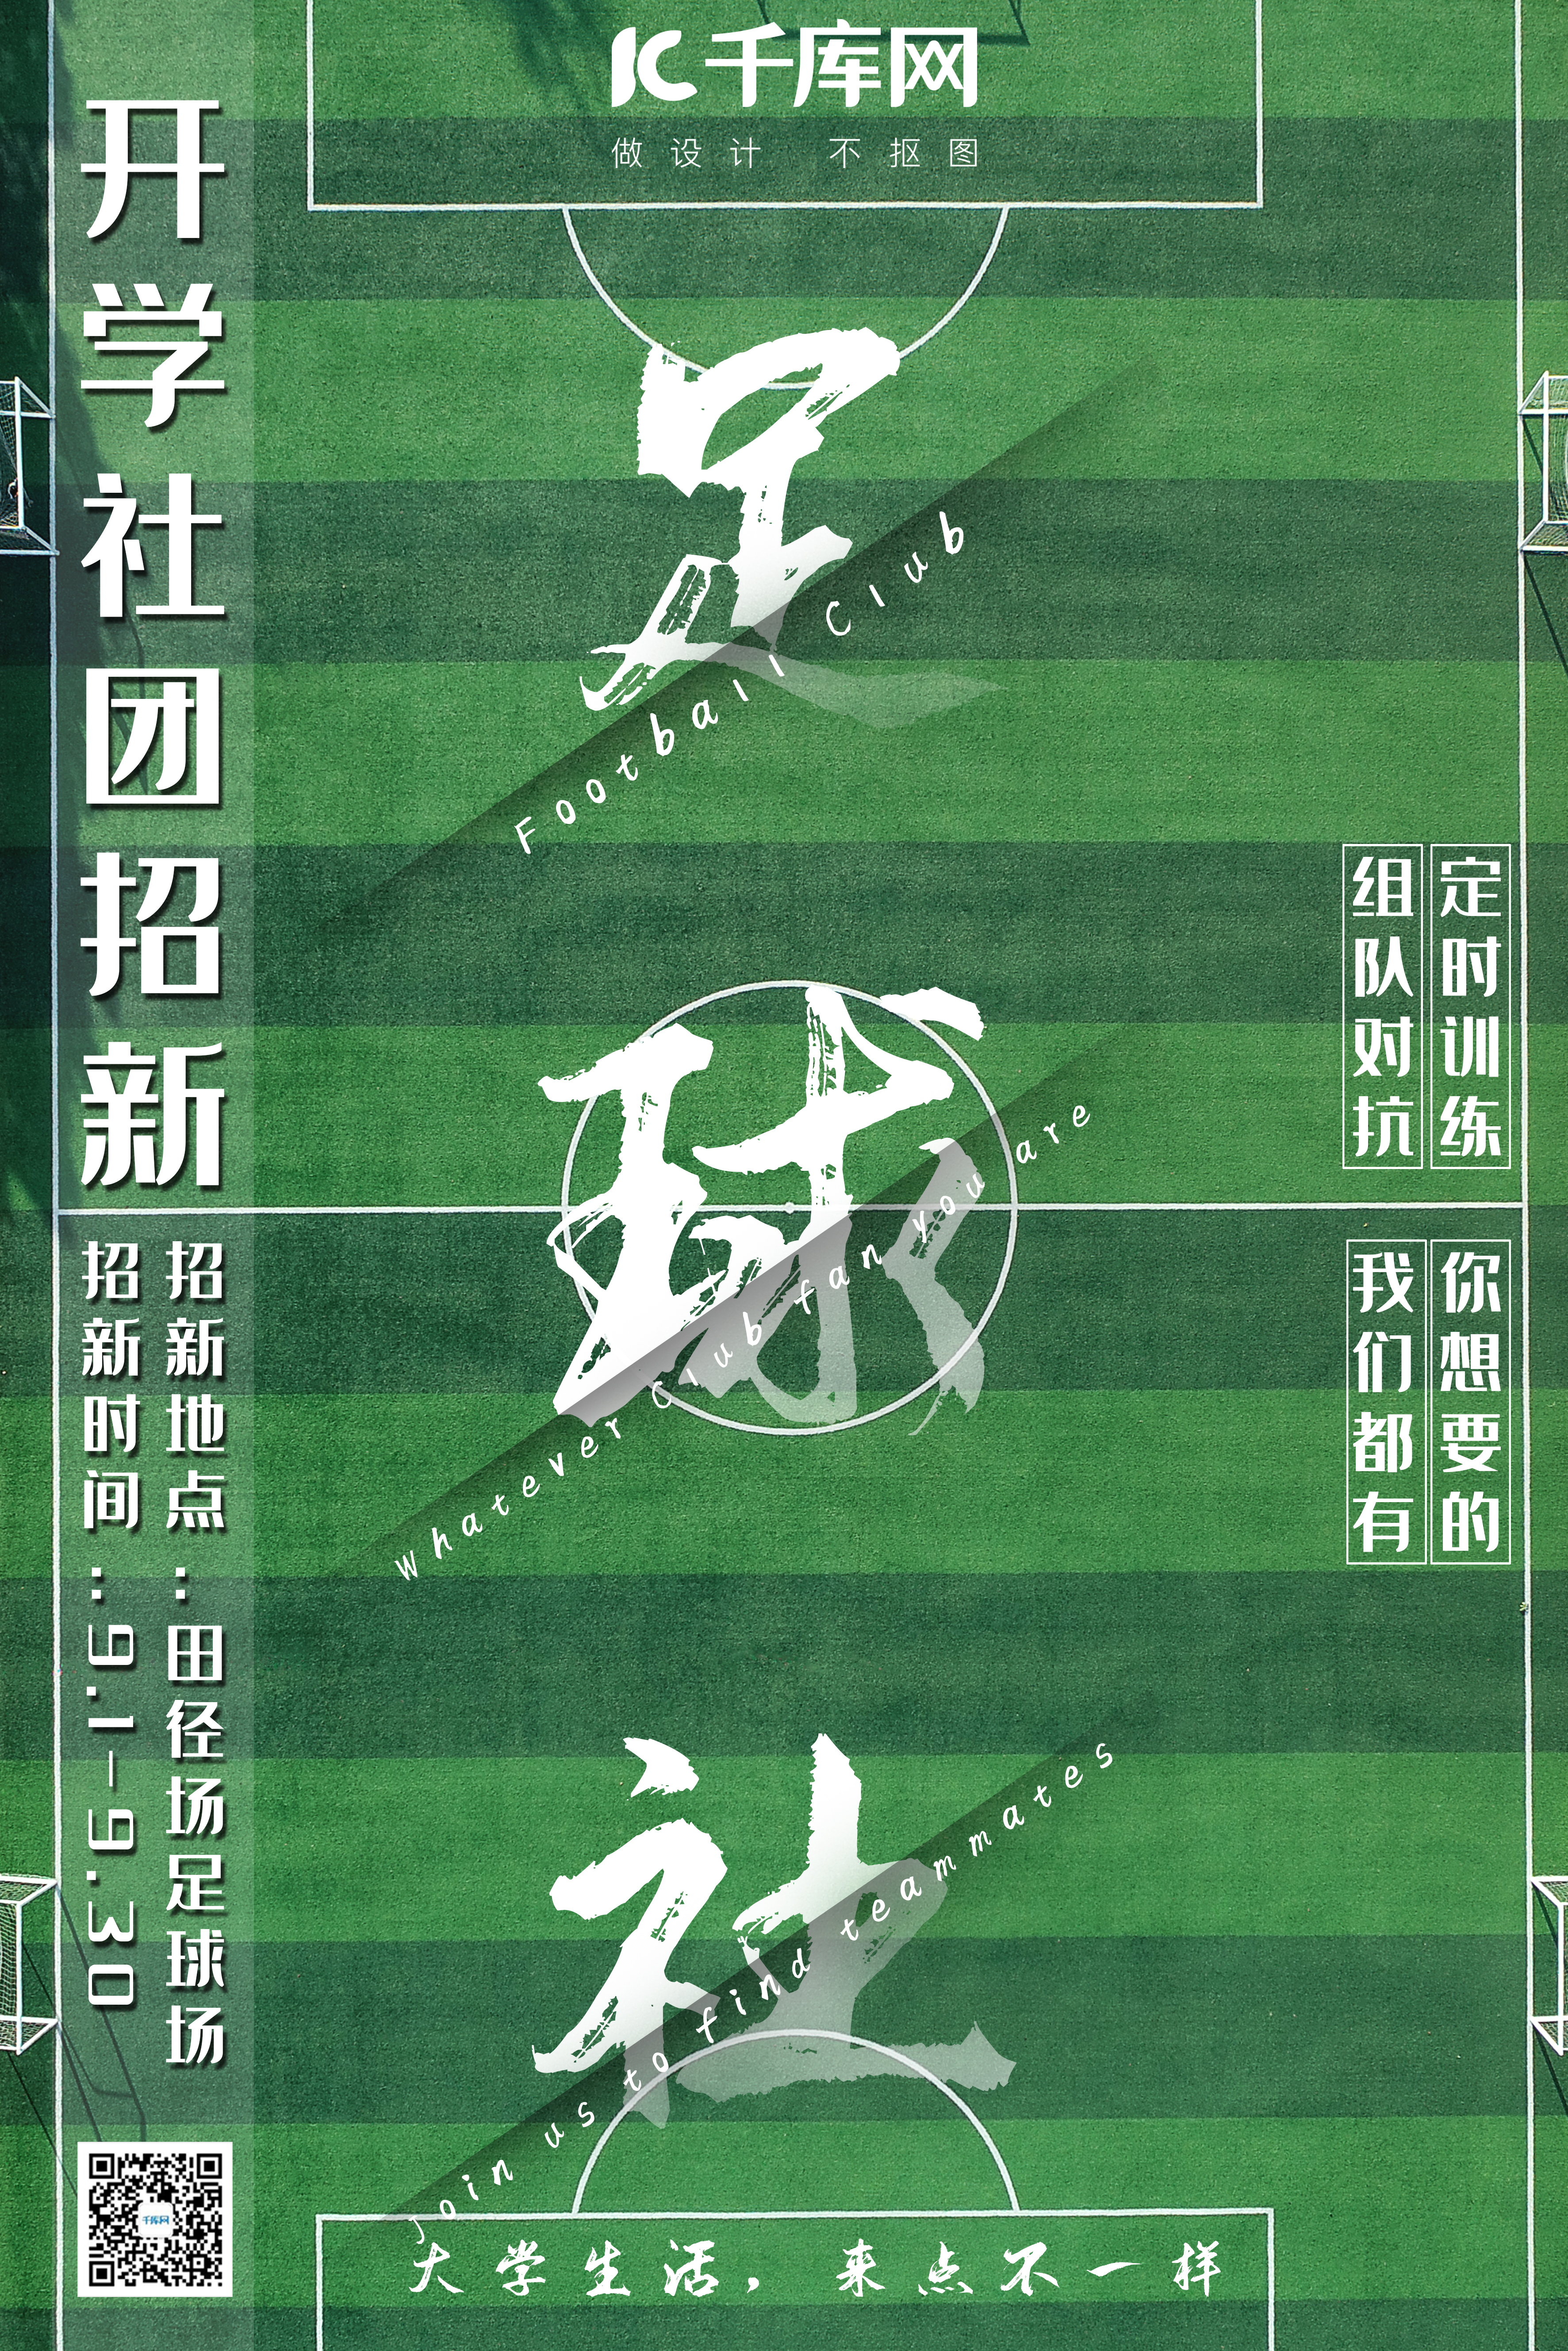 足球社团招新绿茵足球场切割风海报图片